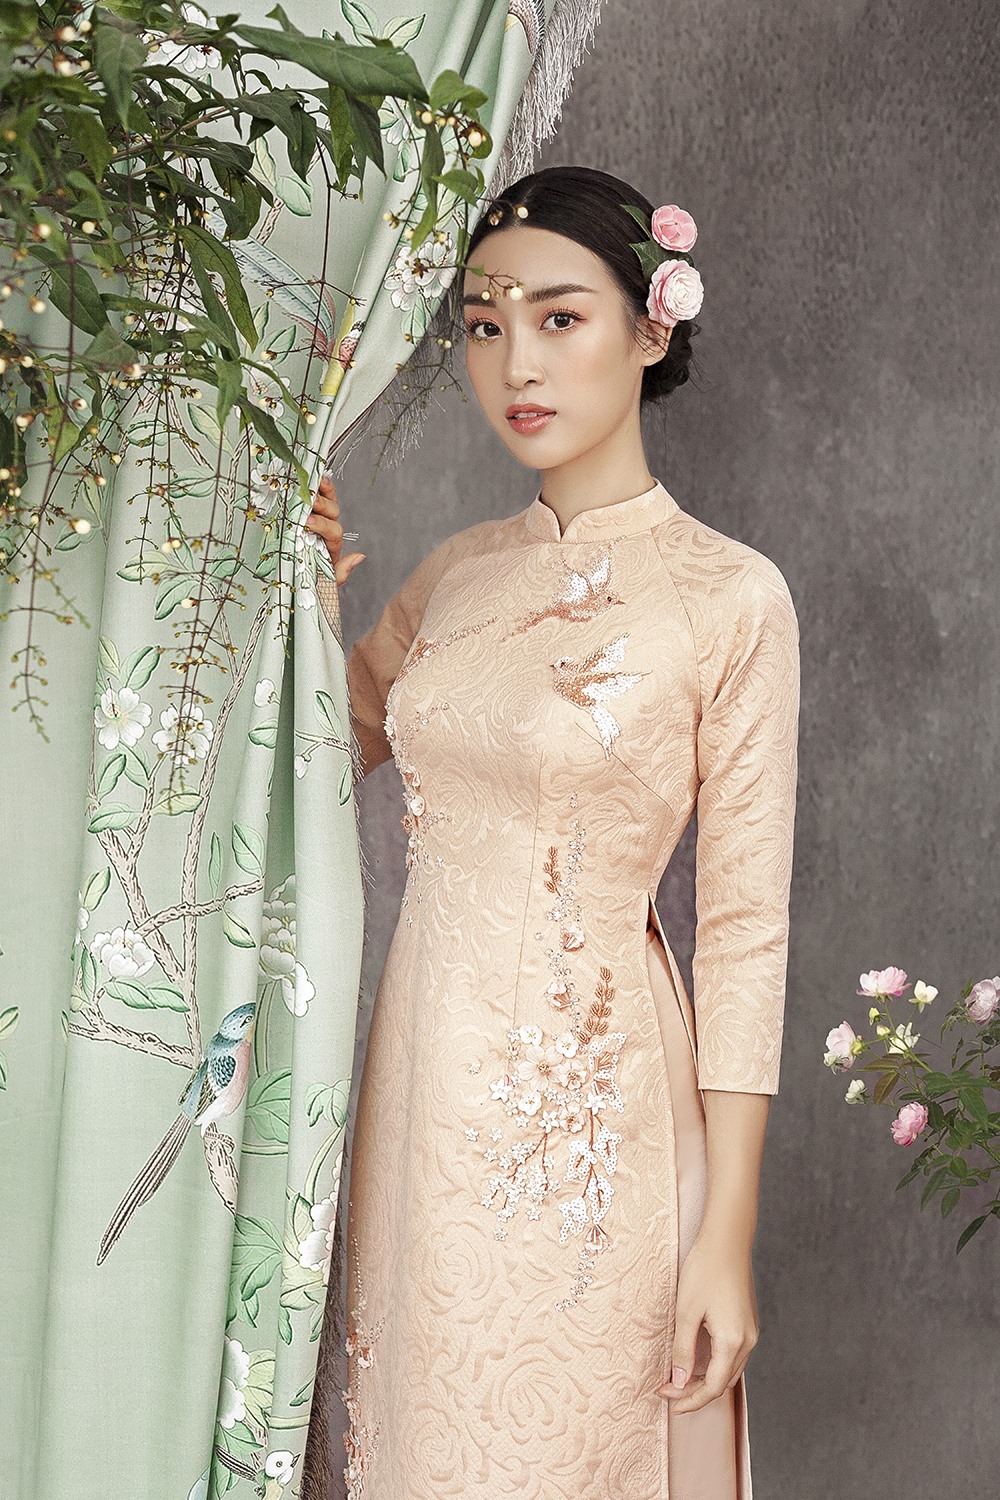 Không chỉ thể hiện tinh thần dân tộc, chiếc áo dài còn góp phần tôn lên vẻ đẹp dịu dàng, thanh lịch của người phụ nữ Việt. 